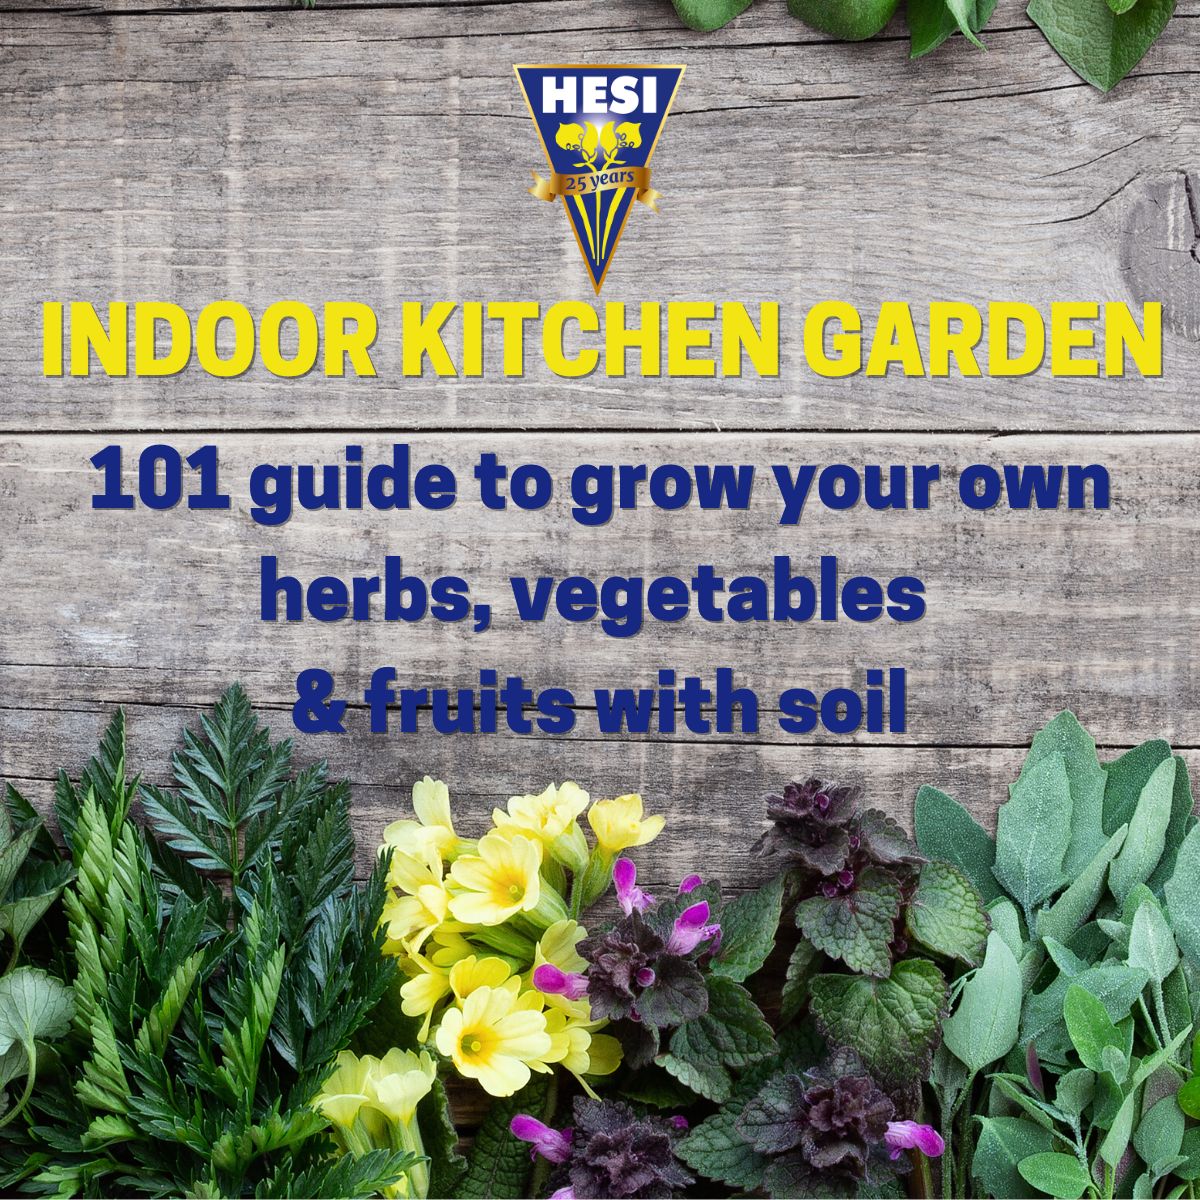 Indoor kitchen garden guide | grow your own edible herbs, veggies & fruits